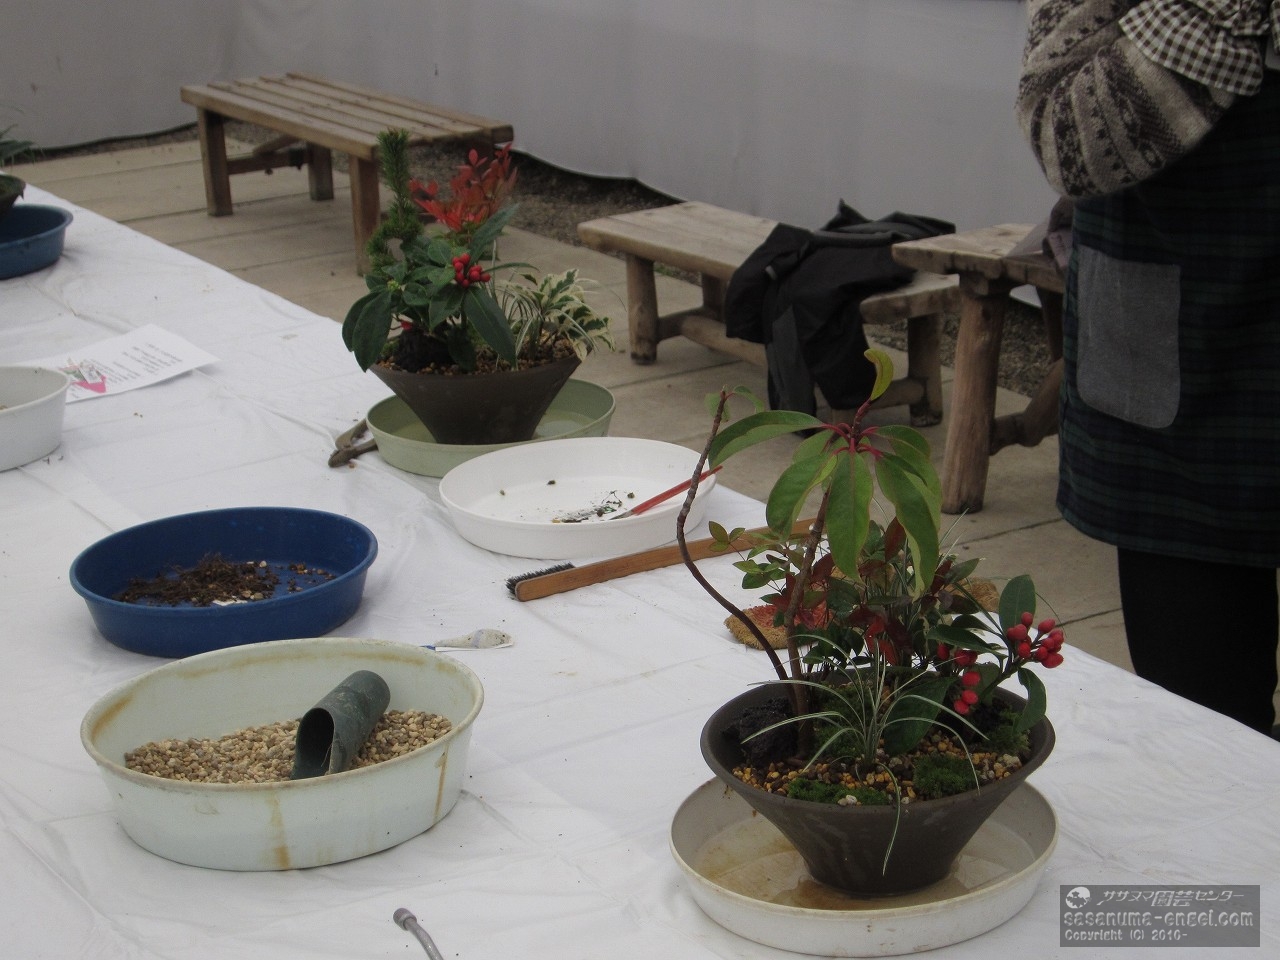 平成３０年開催の寄せ植え教室風景です。